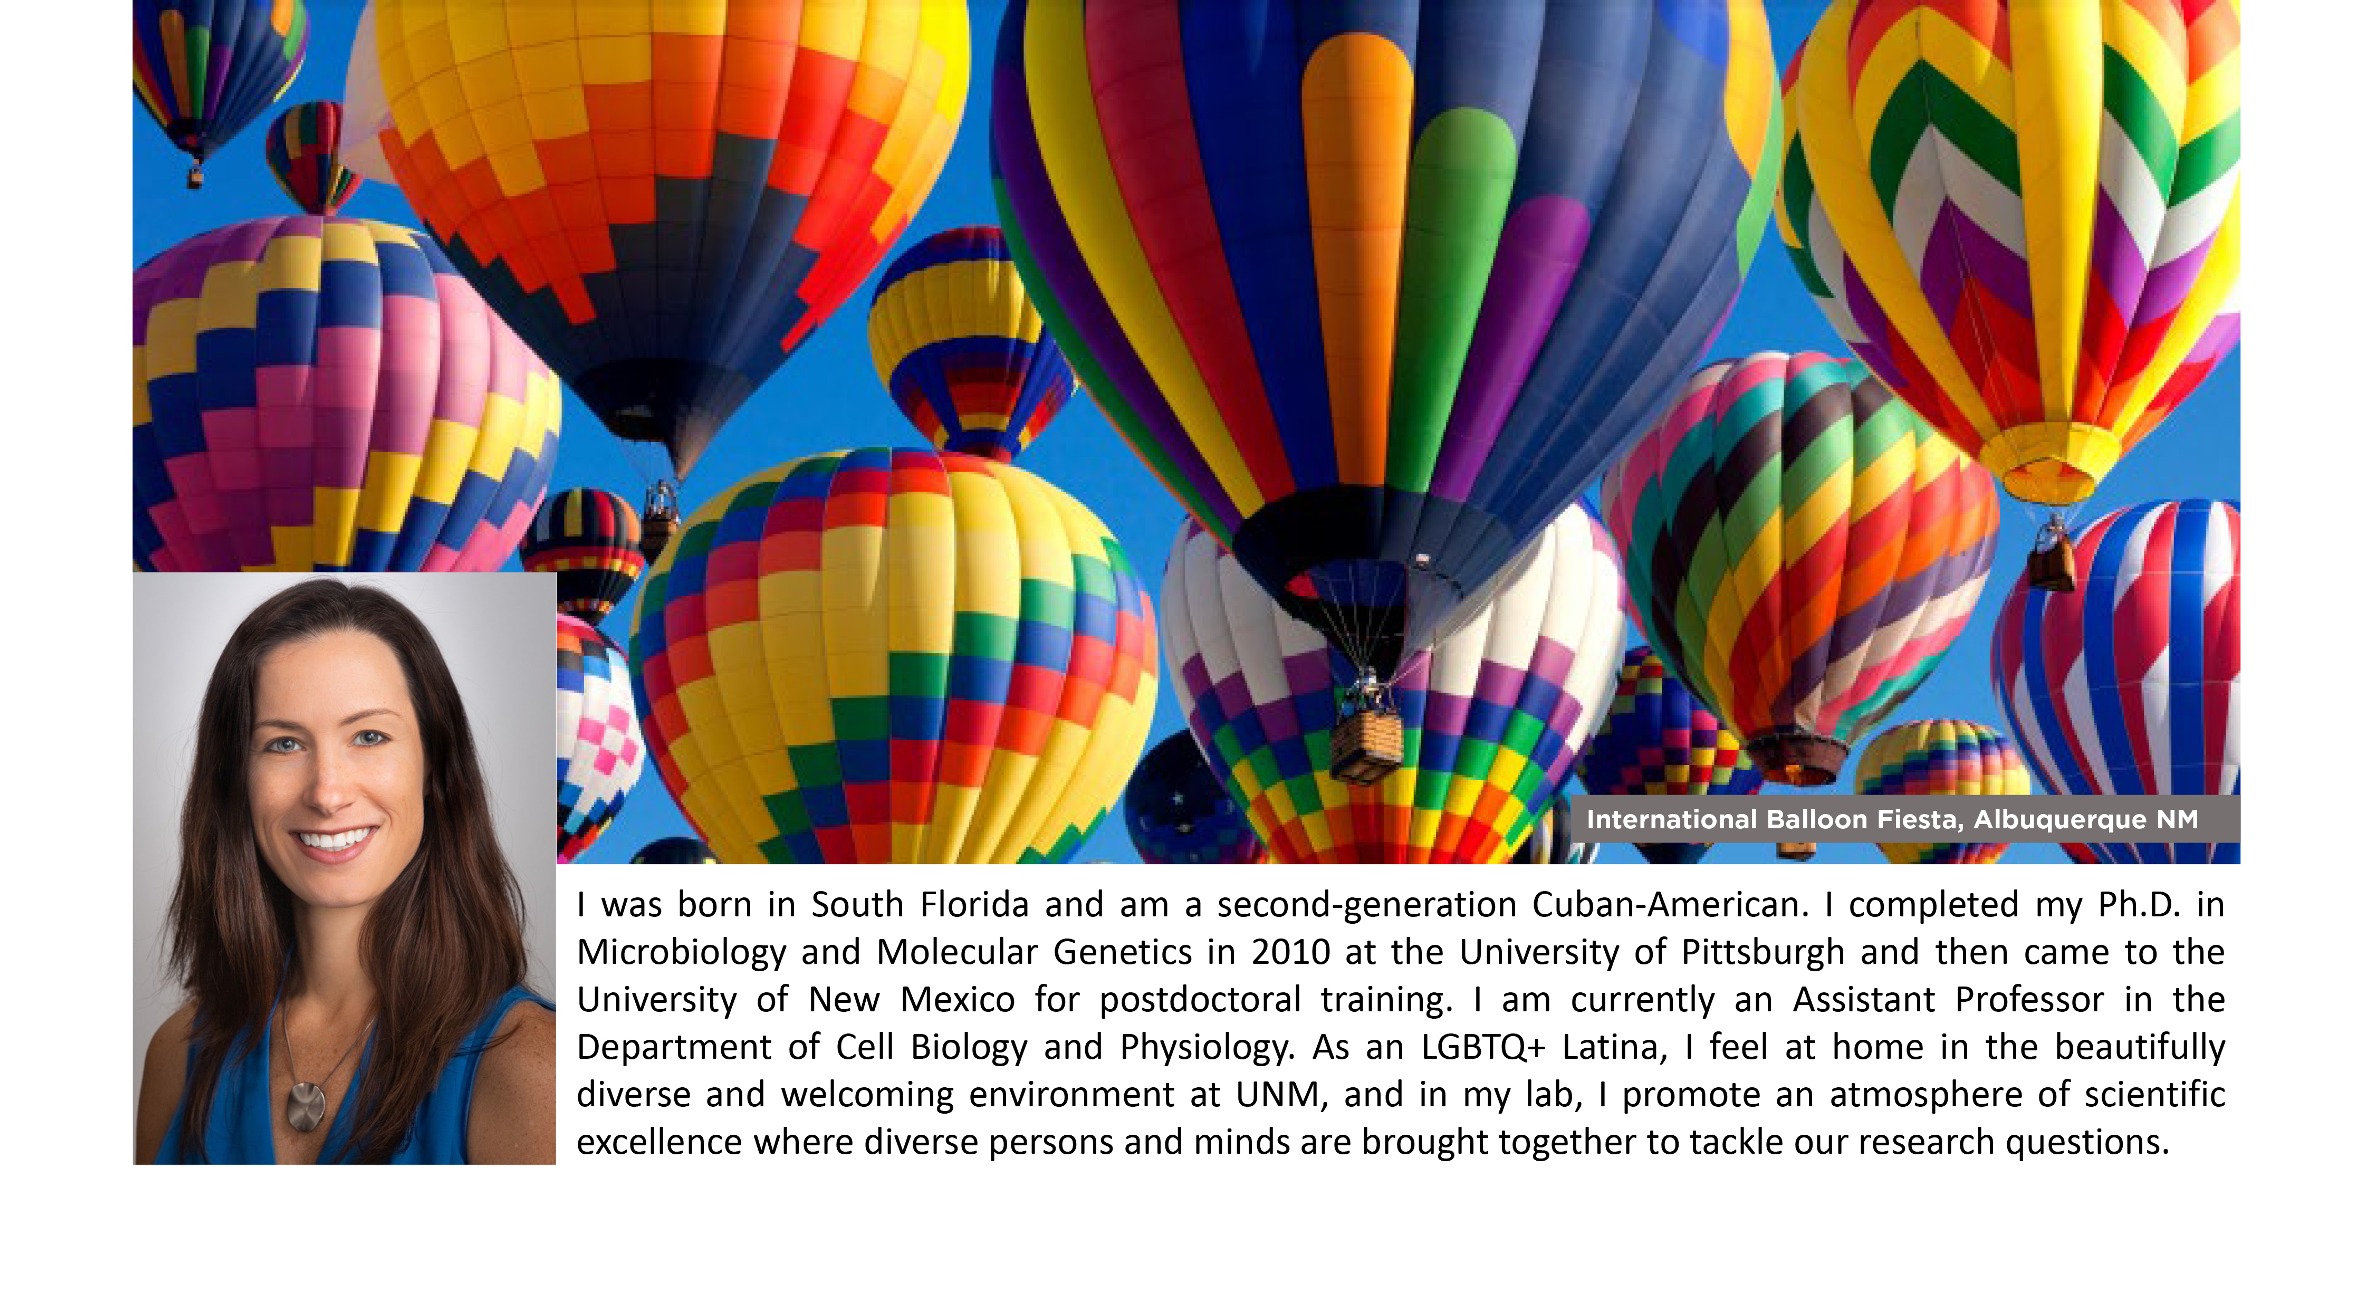 Amy Gardner headshot et photo de montgolfières